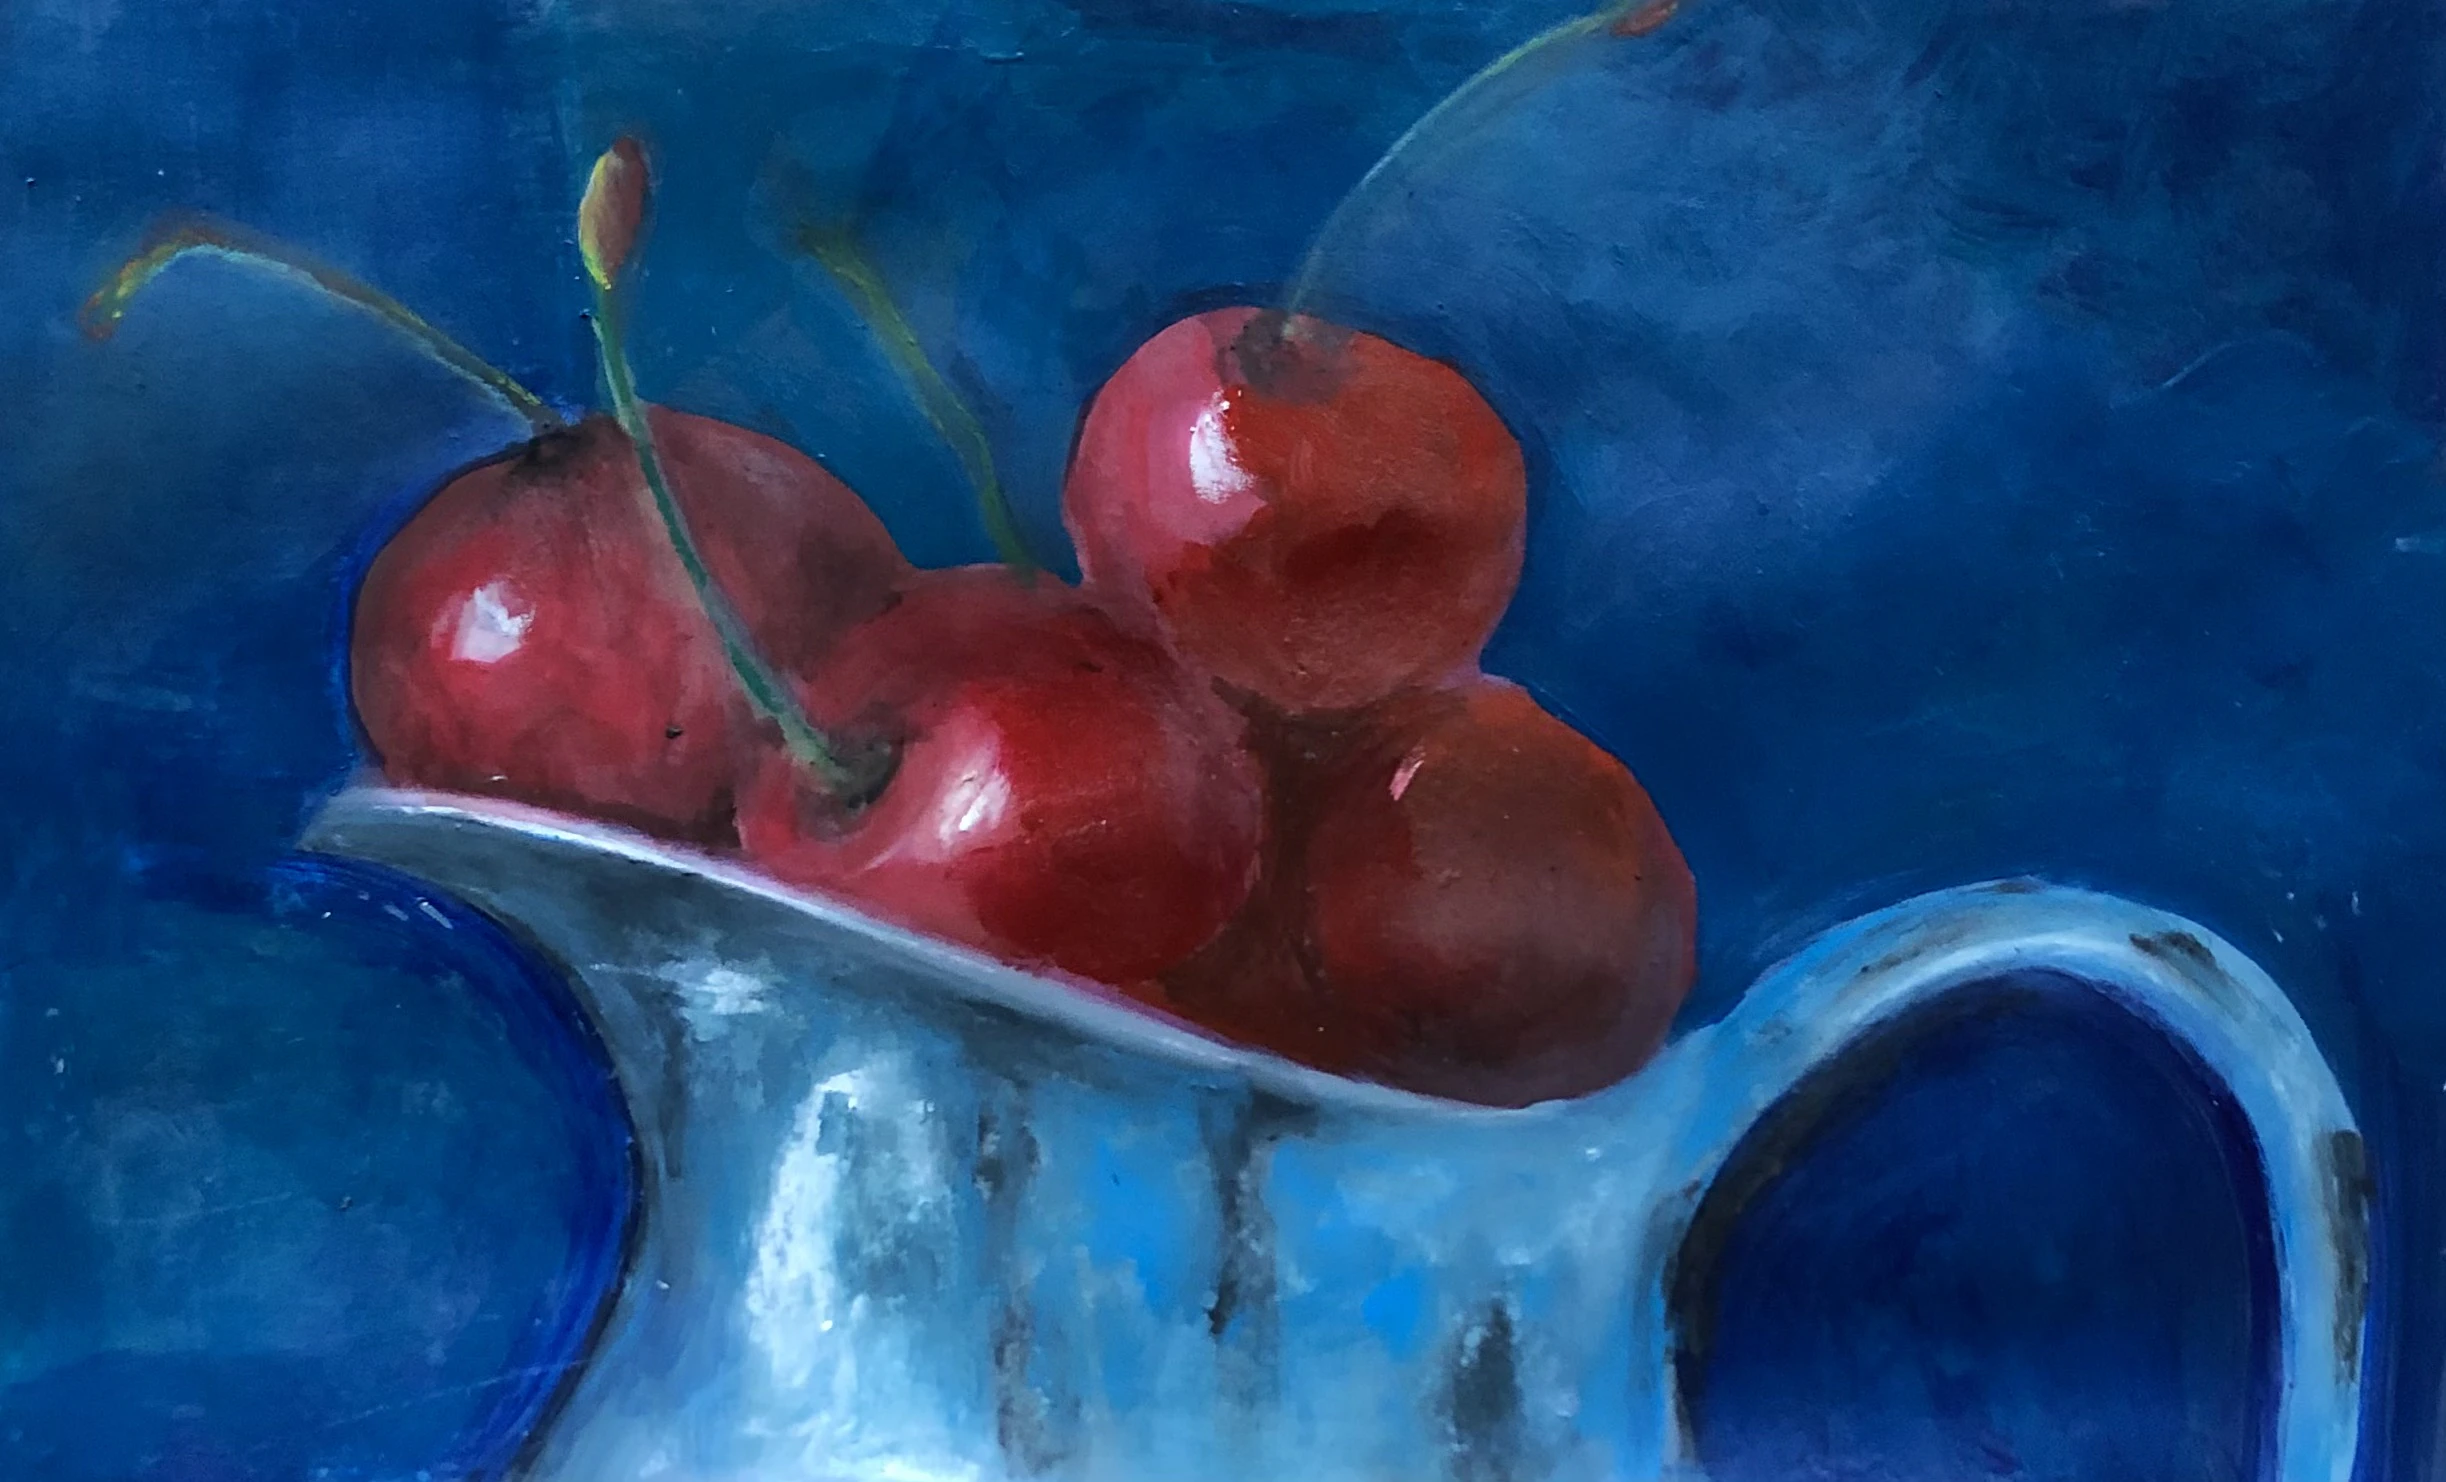 Cherries in an old blue jug